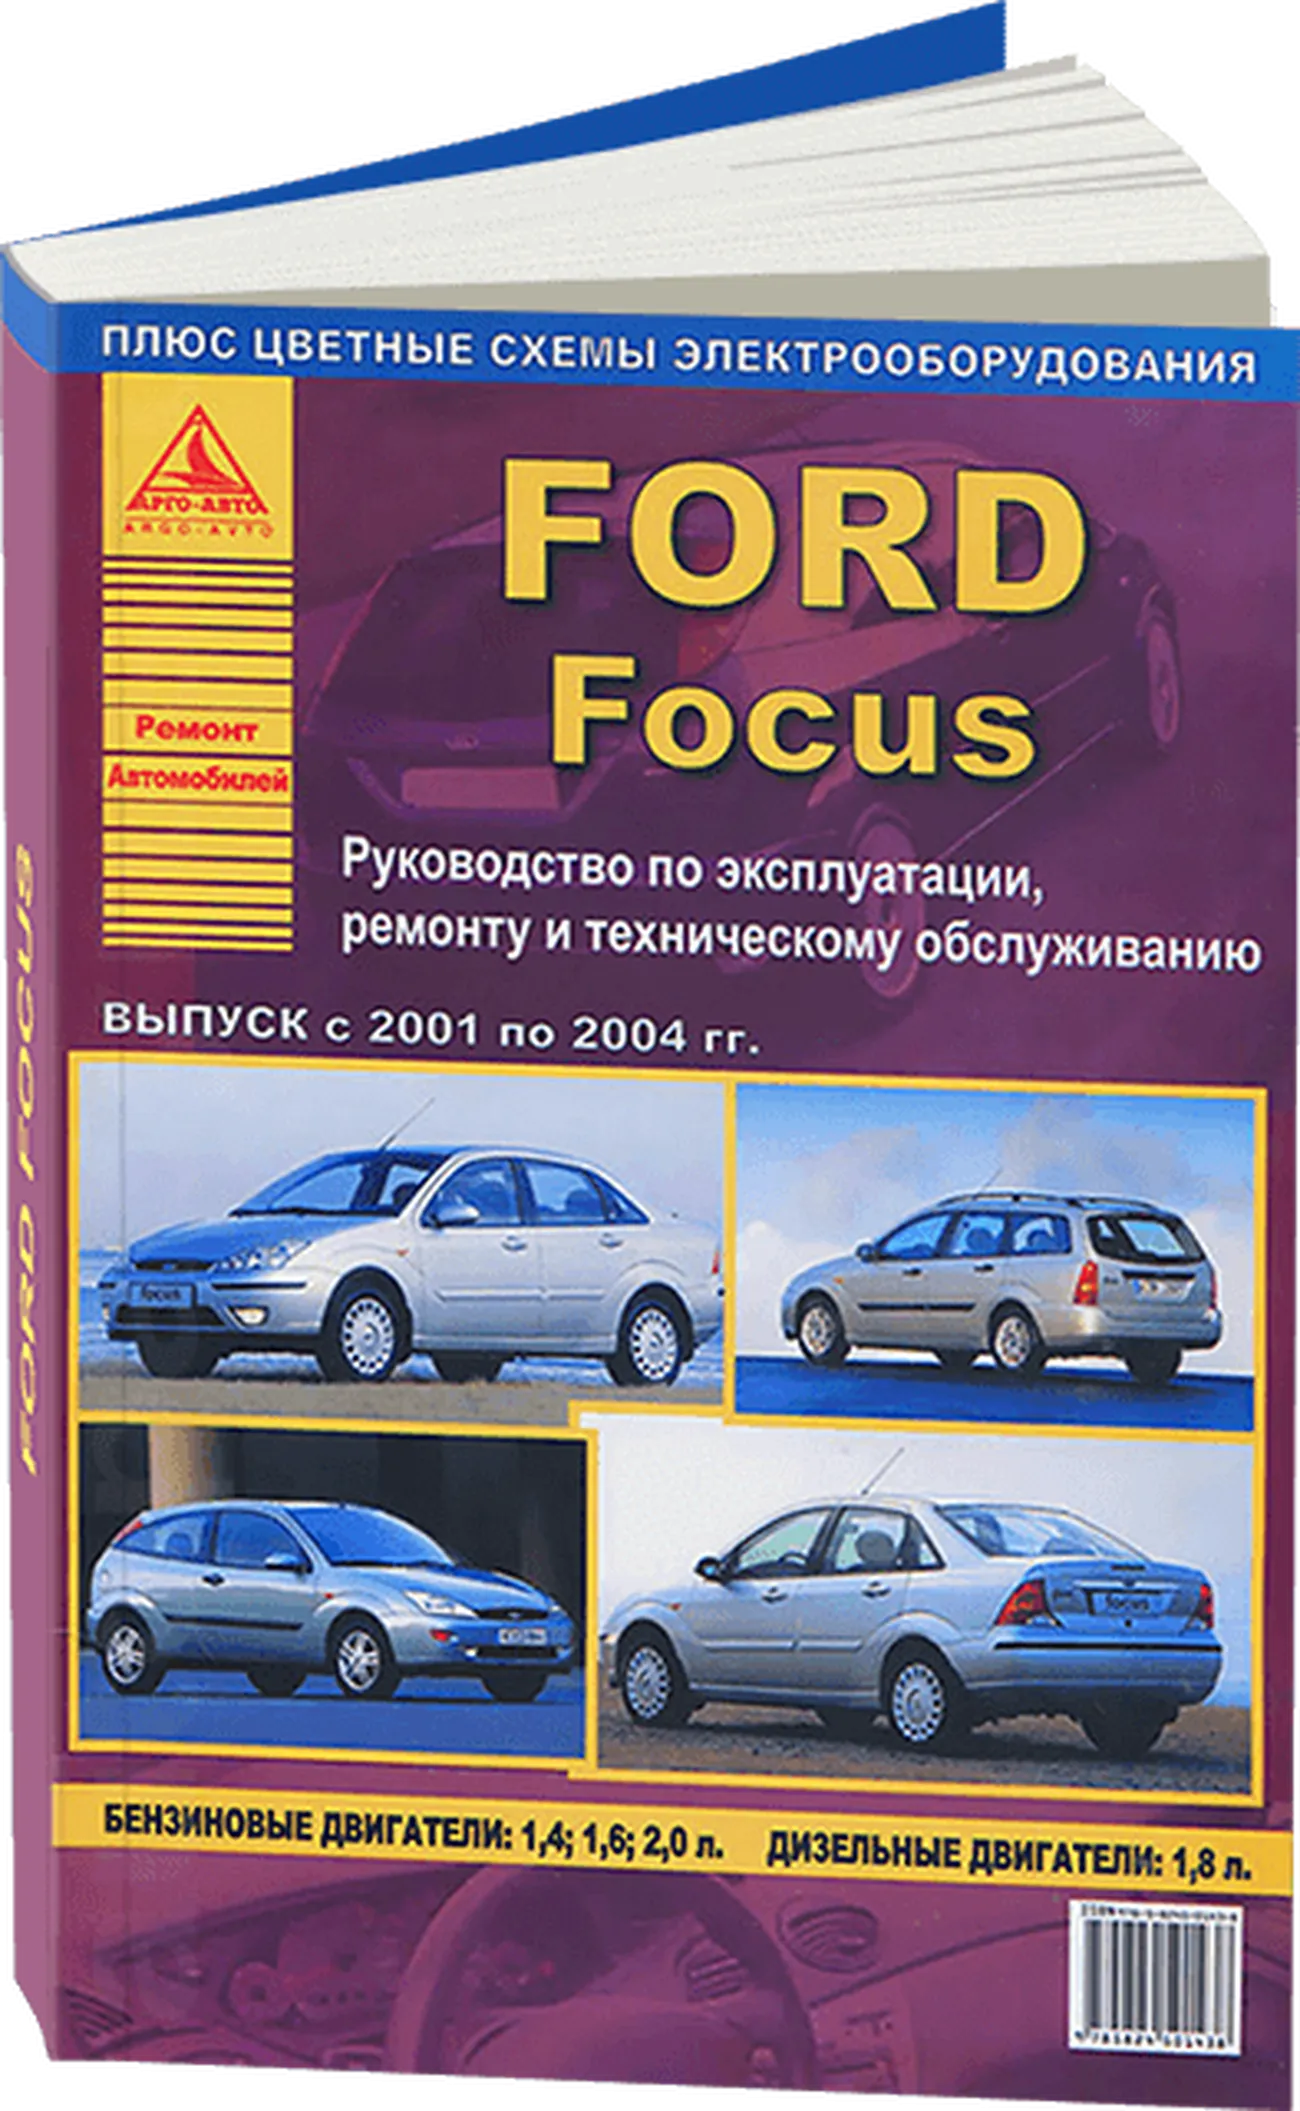 Книга: FORD FOCUS (б) 2001-2004 г.в., рем., экспл., то | Арго-Авто